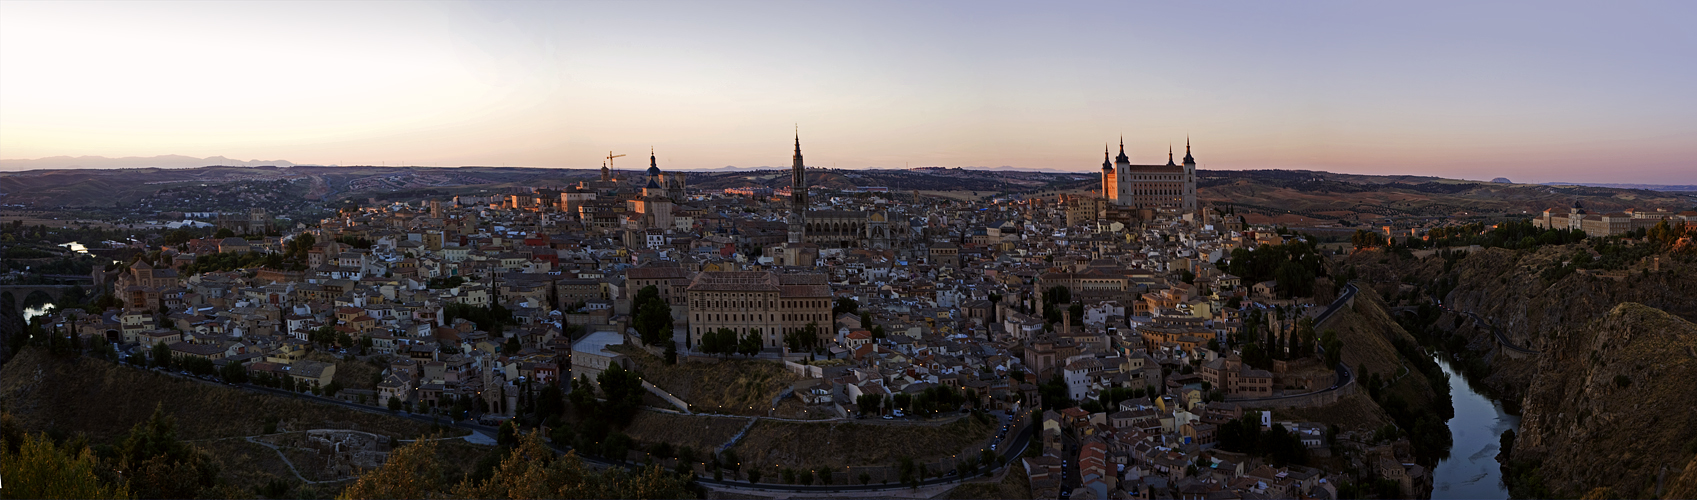 Toledo desde el Parador